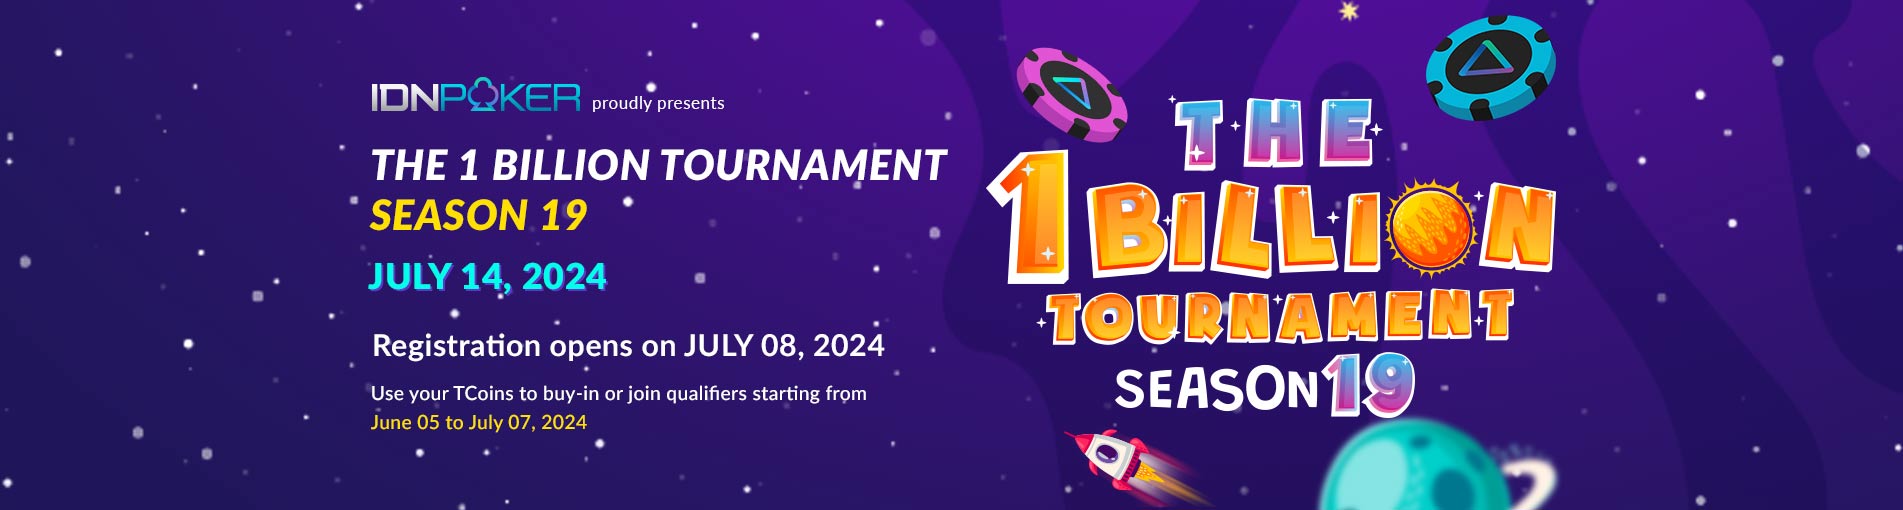 The 1 Billion Tournament Season 19